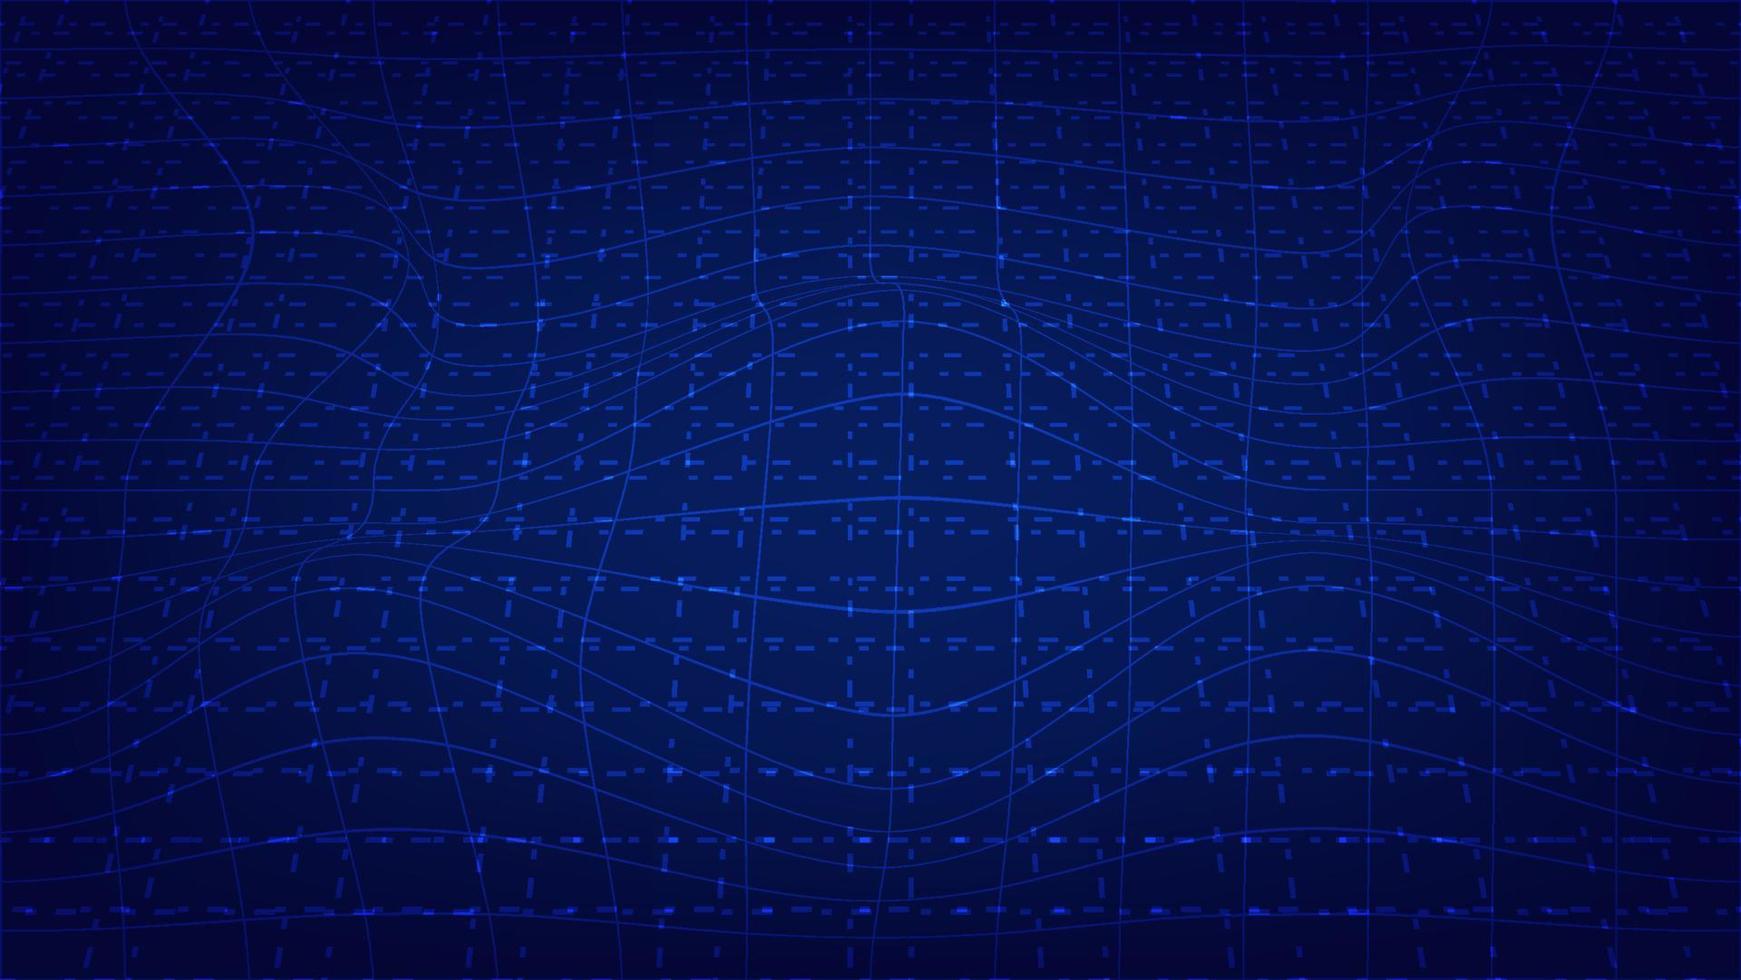 patrón de onda de línea abstracta en iluminación azul. concepto de fondo futurista y tecnológico vector